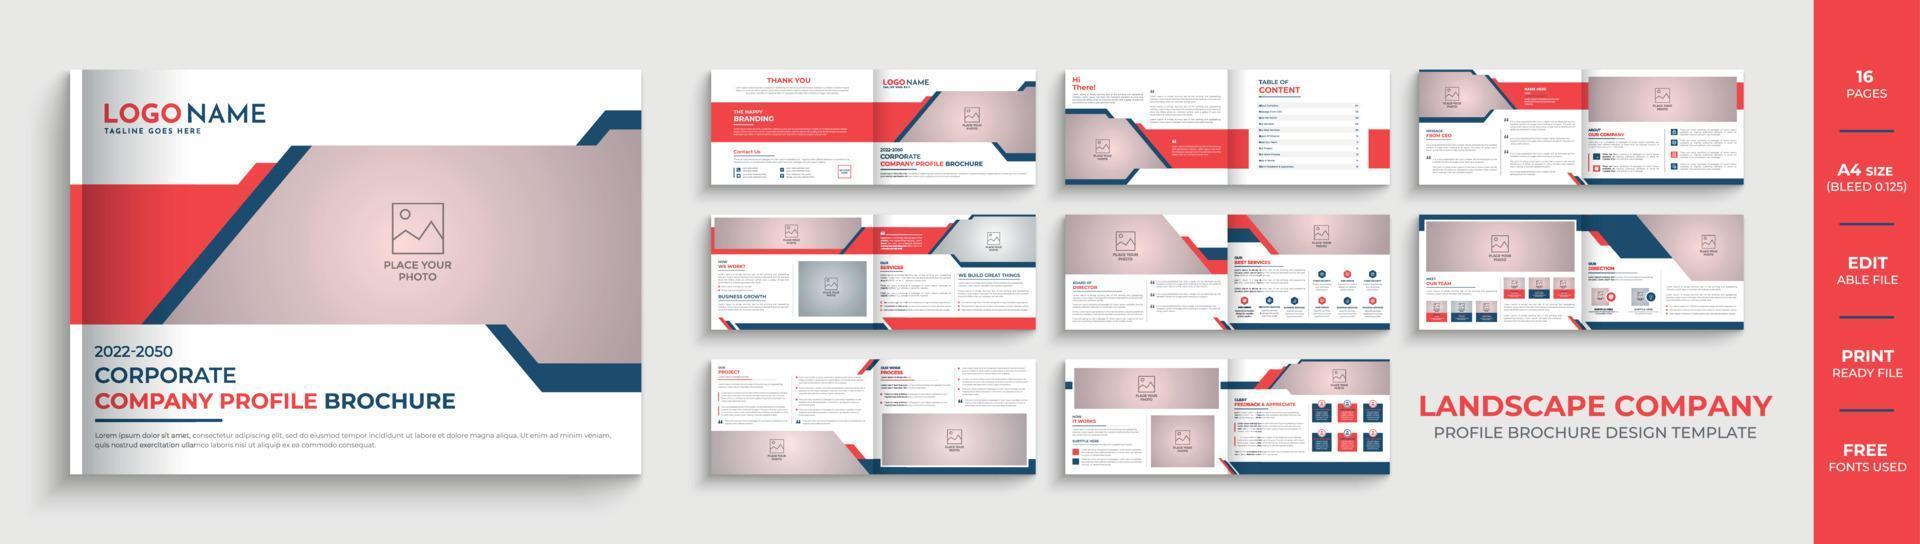 Diseño de folleto de perfil de empresa de paisaje creativo de 16 páginas o diseño de plantilla de folleto corporativo vector